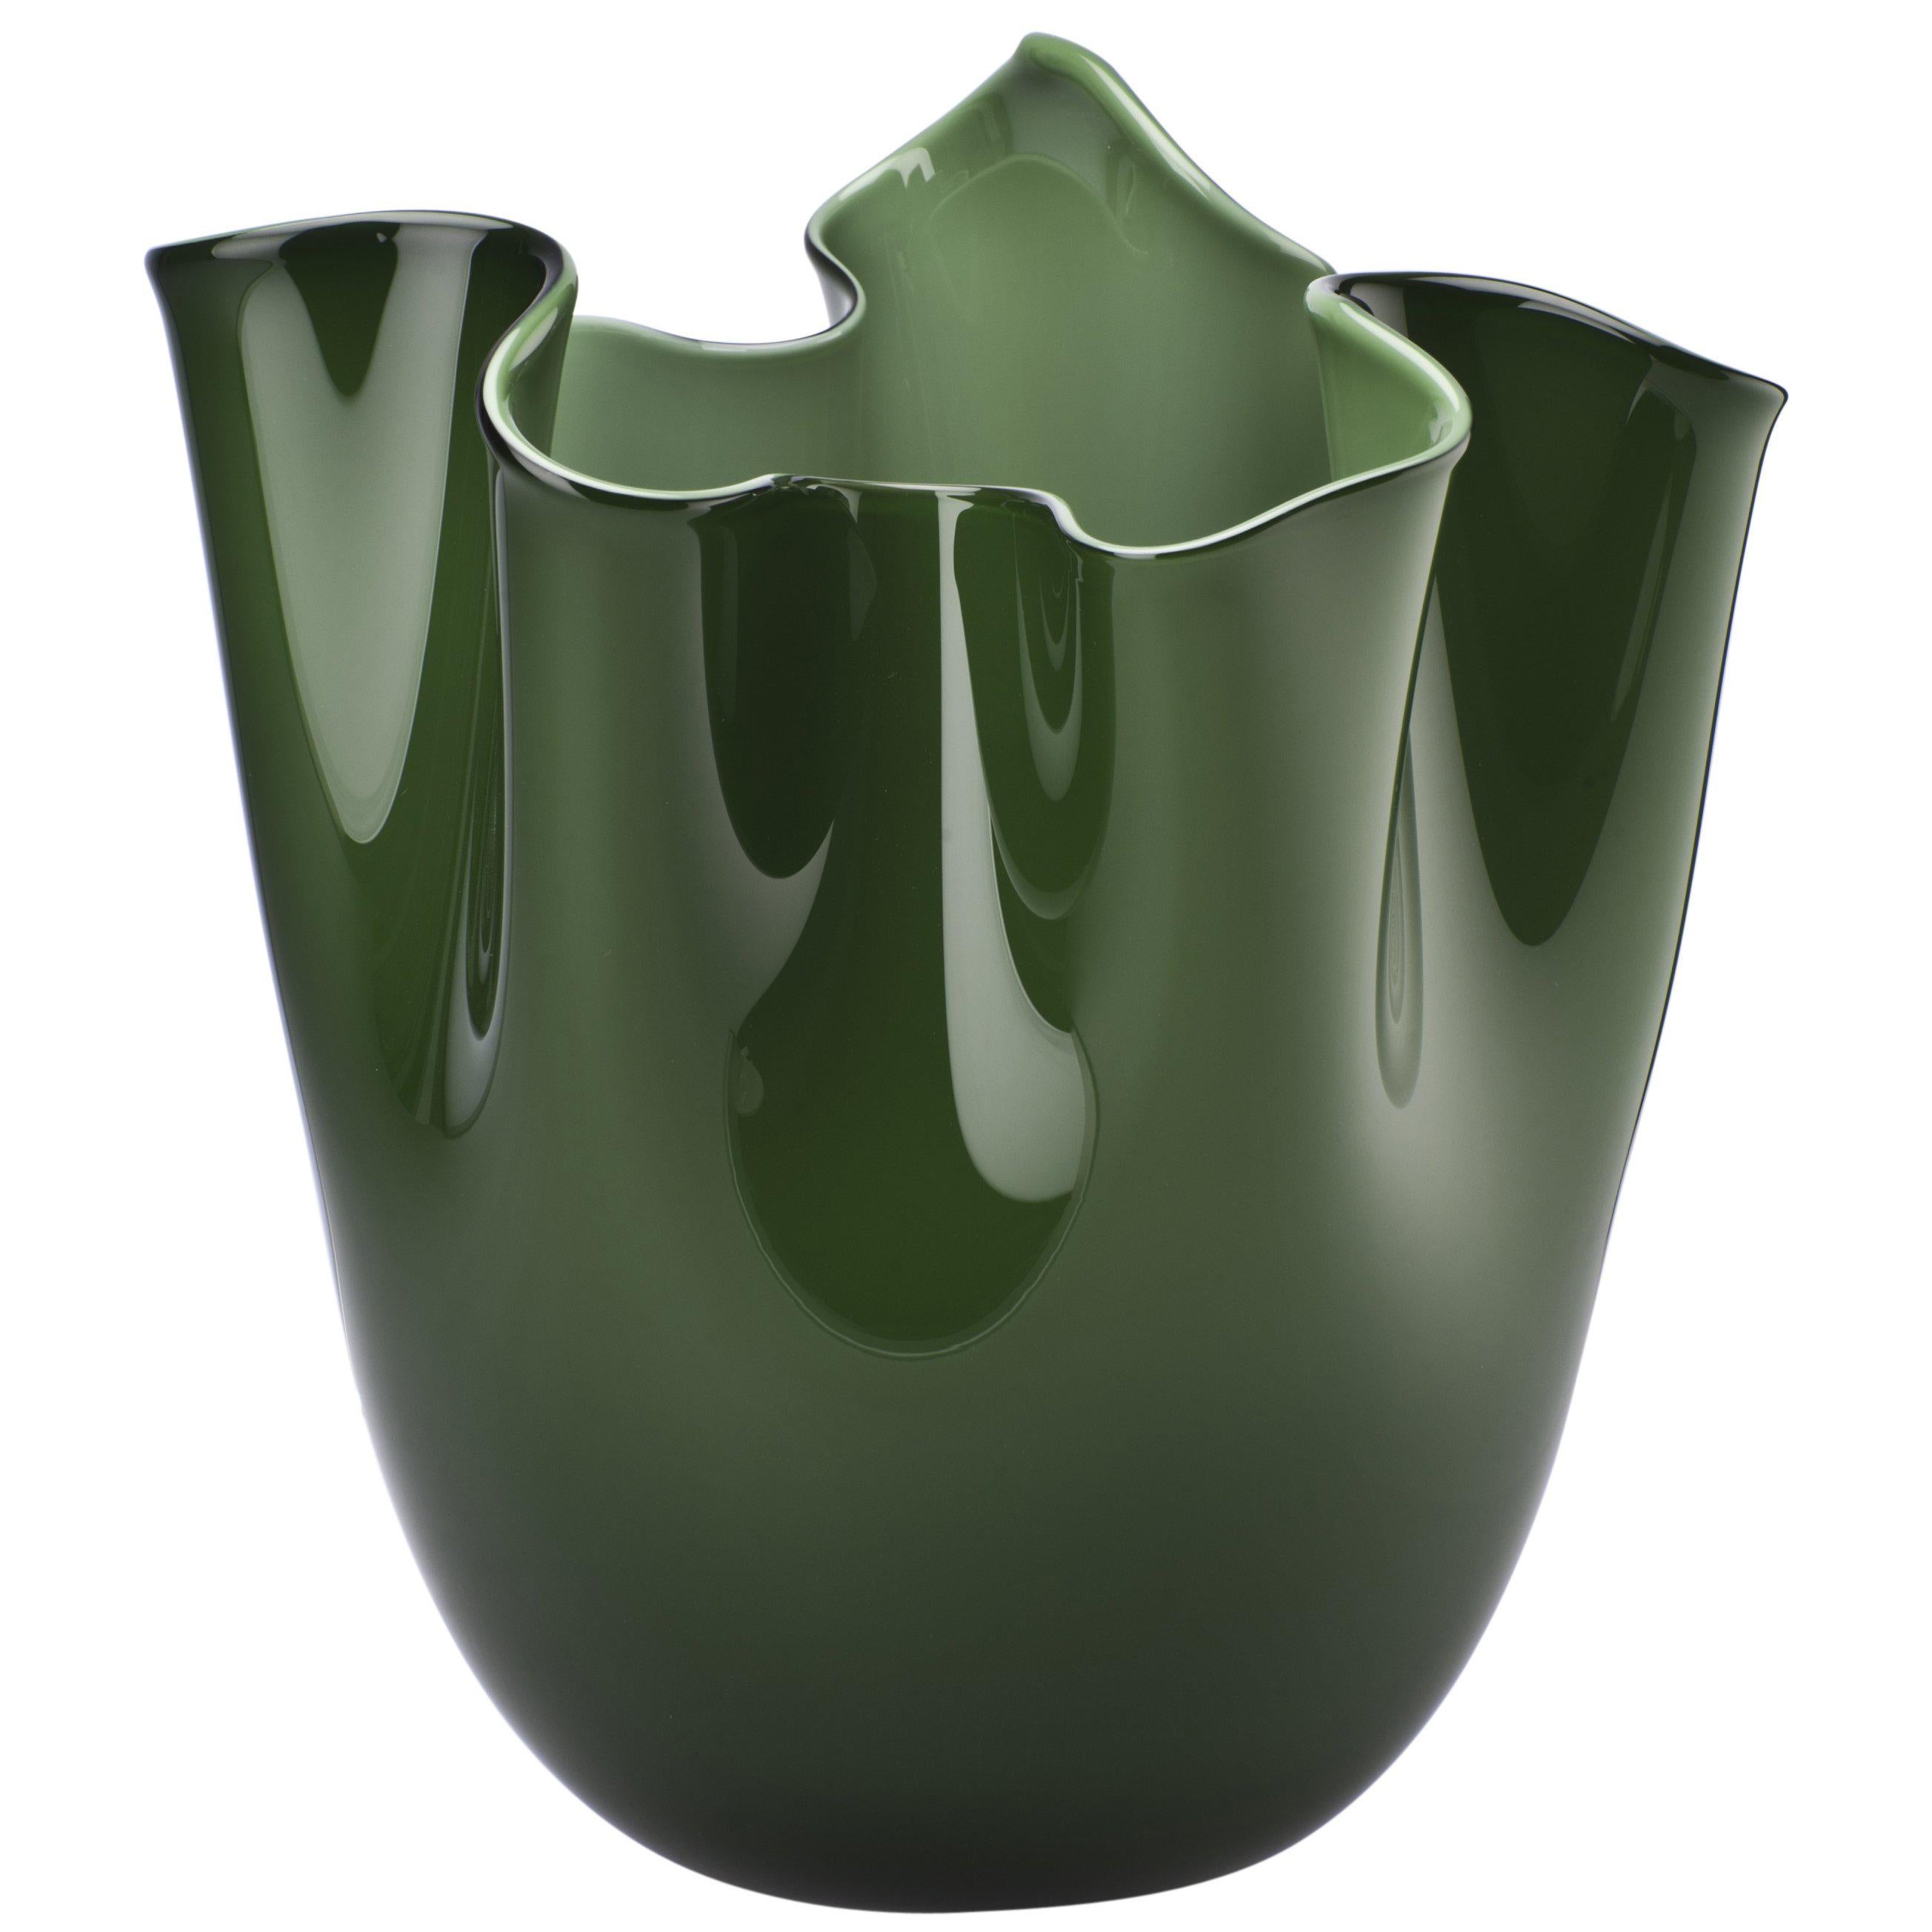 Fazzoletto Glass Vase in Apple Green by Fulvio Bianconi & Paolo Venini